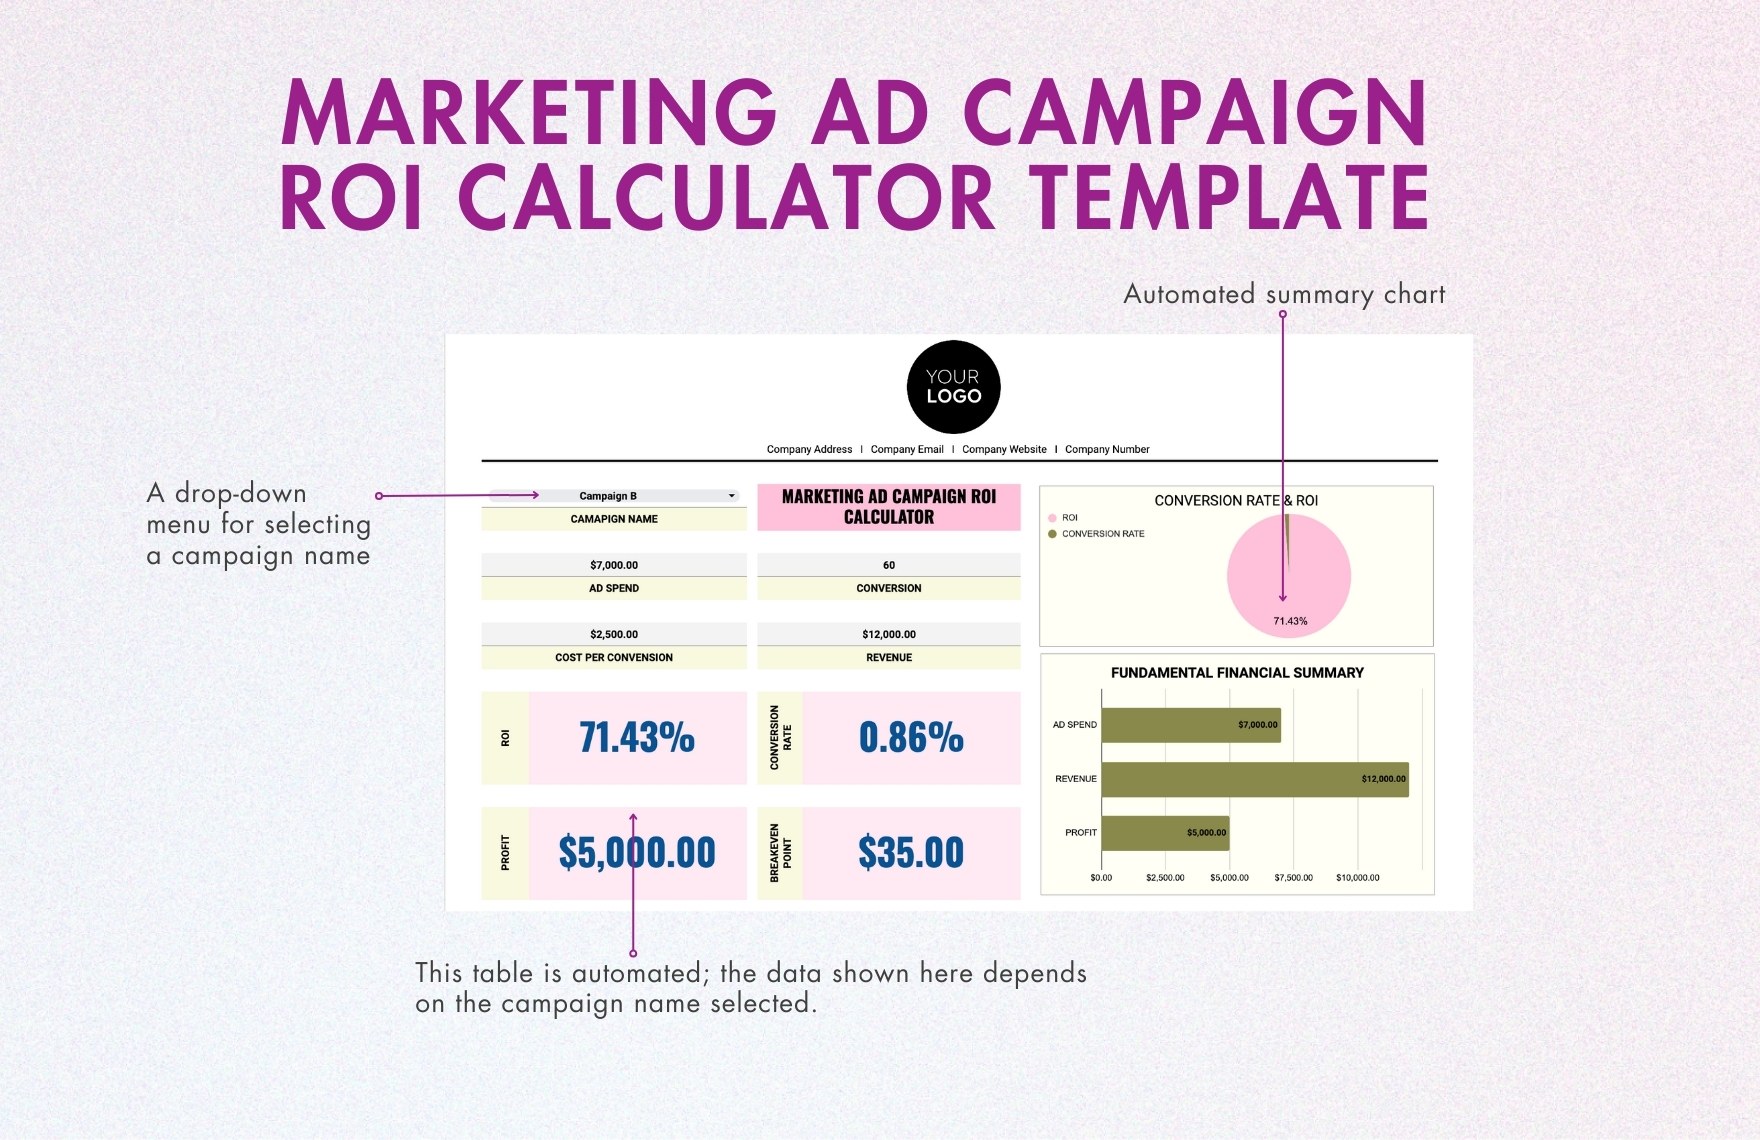 Marketing Ad Campaign ROI Calculator Template